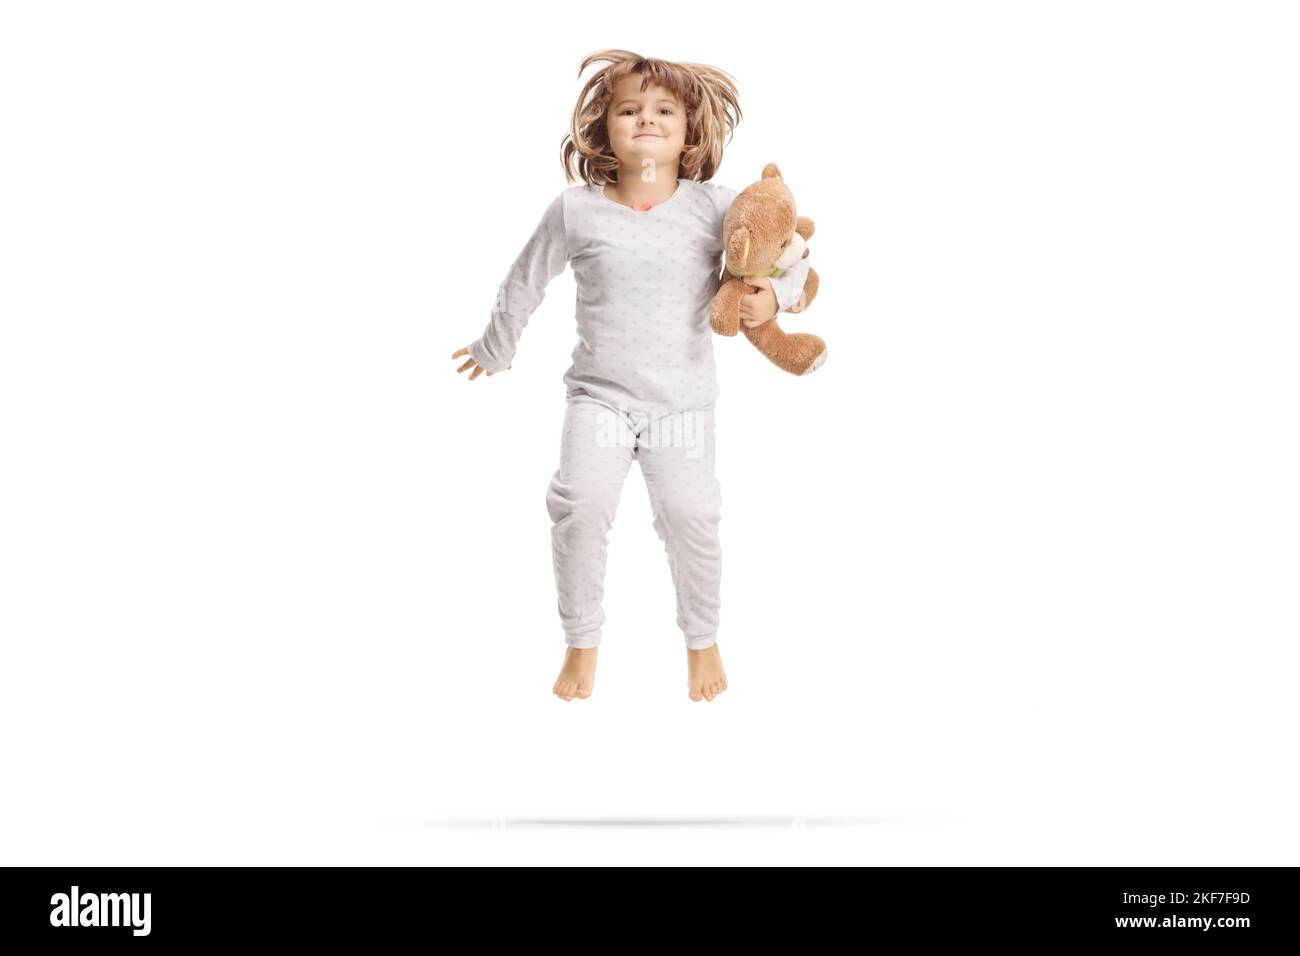 Petite fille en pyjama tenant un ours en peluche et sautant isolé sur fond blanc Banque D'Images